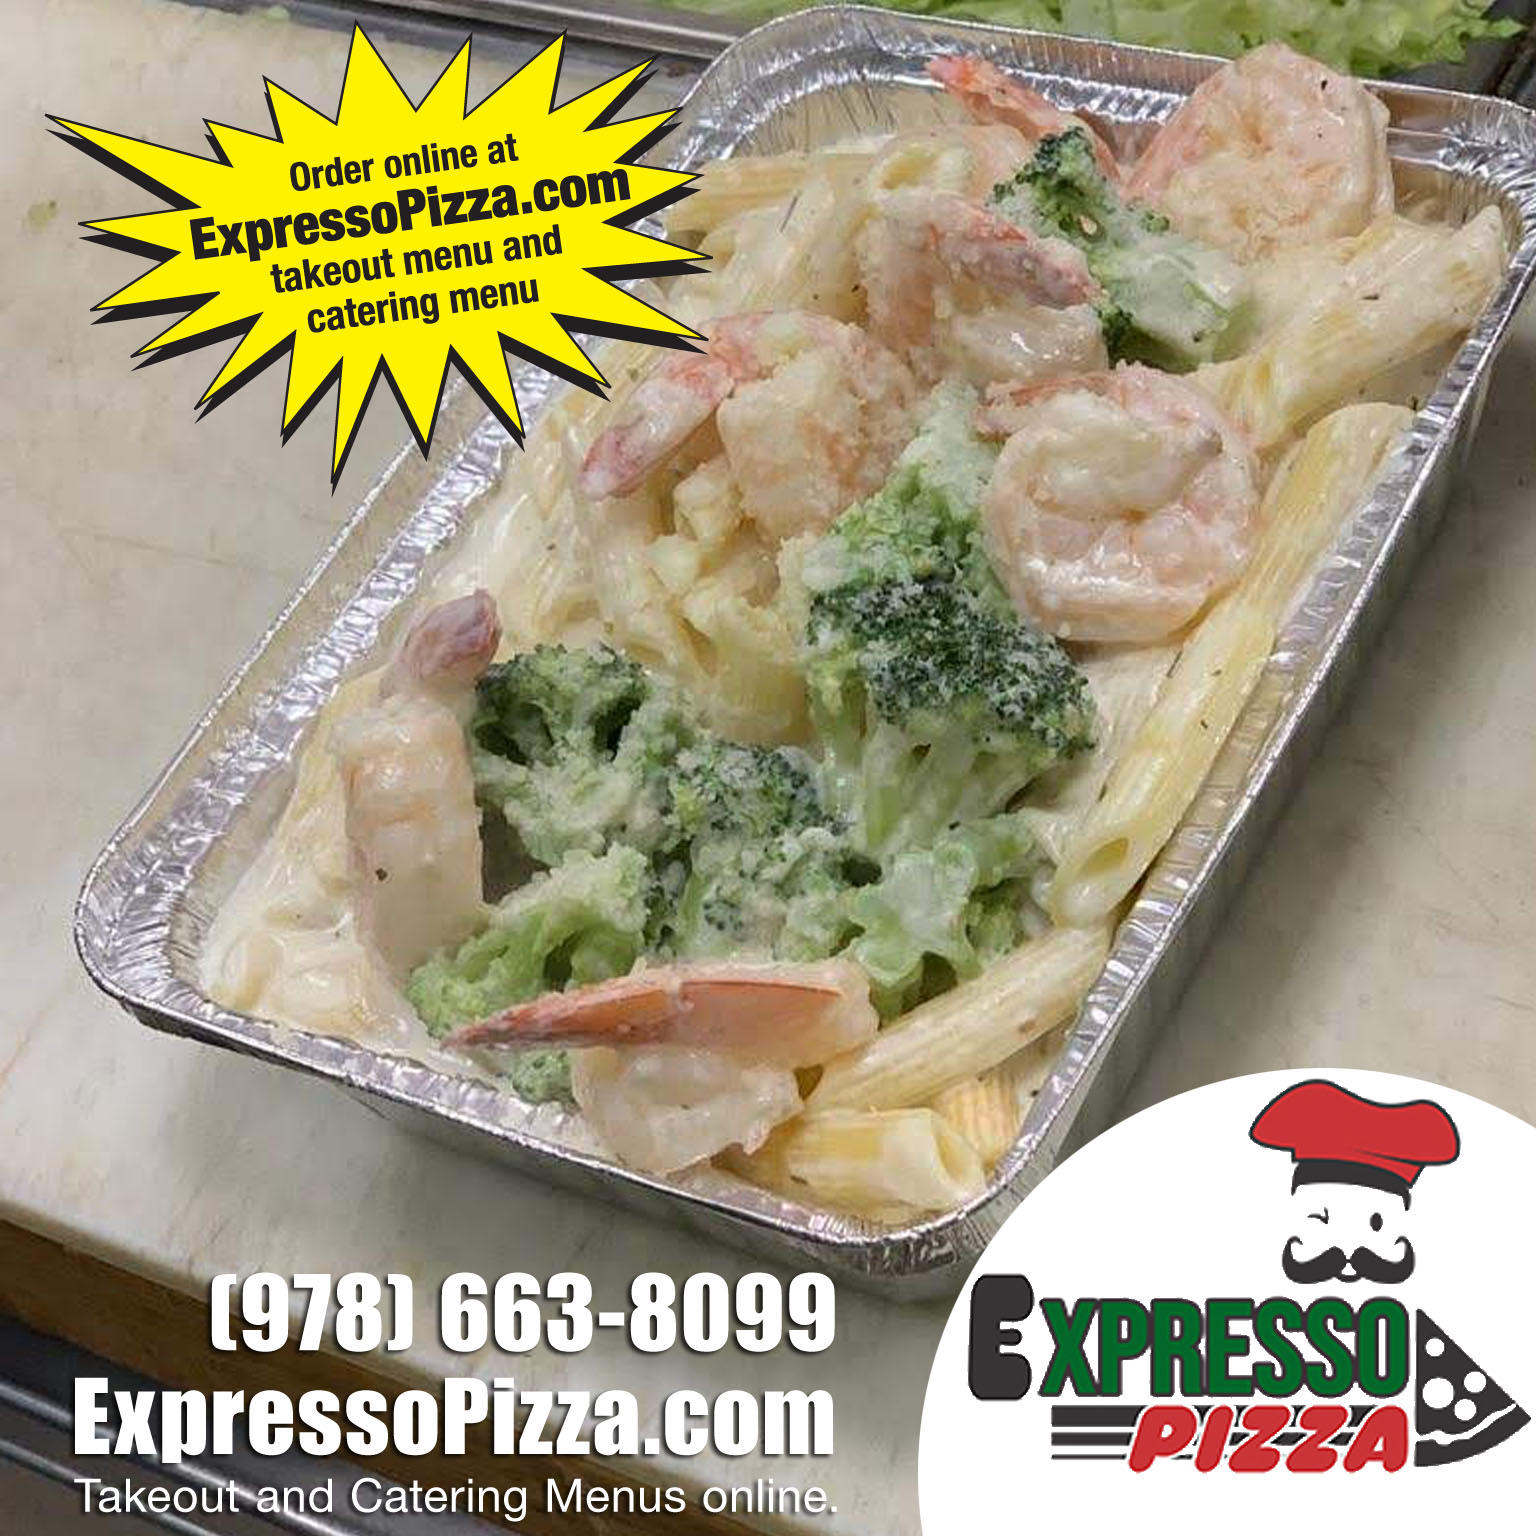 Expresso Pizza Photo